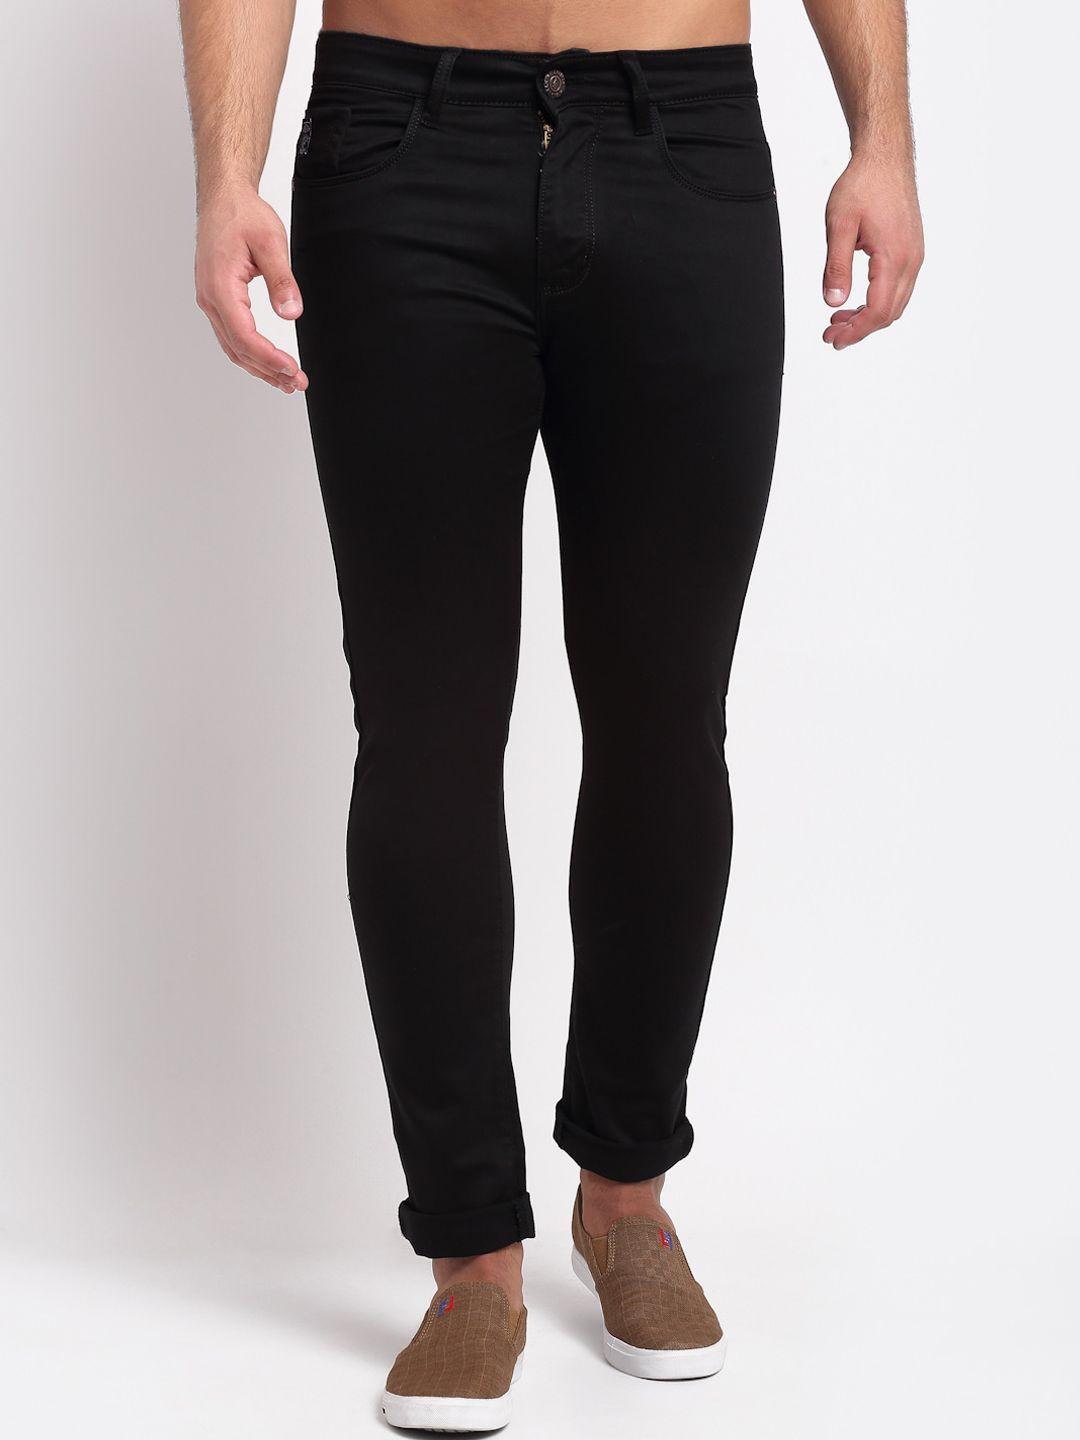 louis stitch men black solid comfort slim fit stretchable jeans